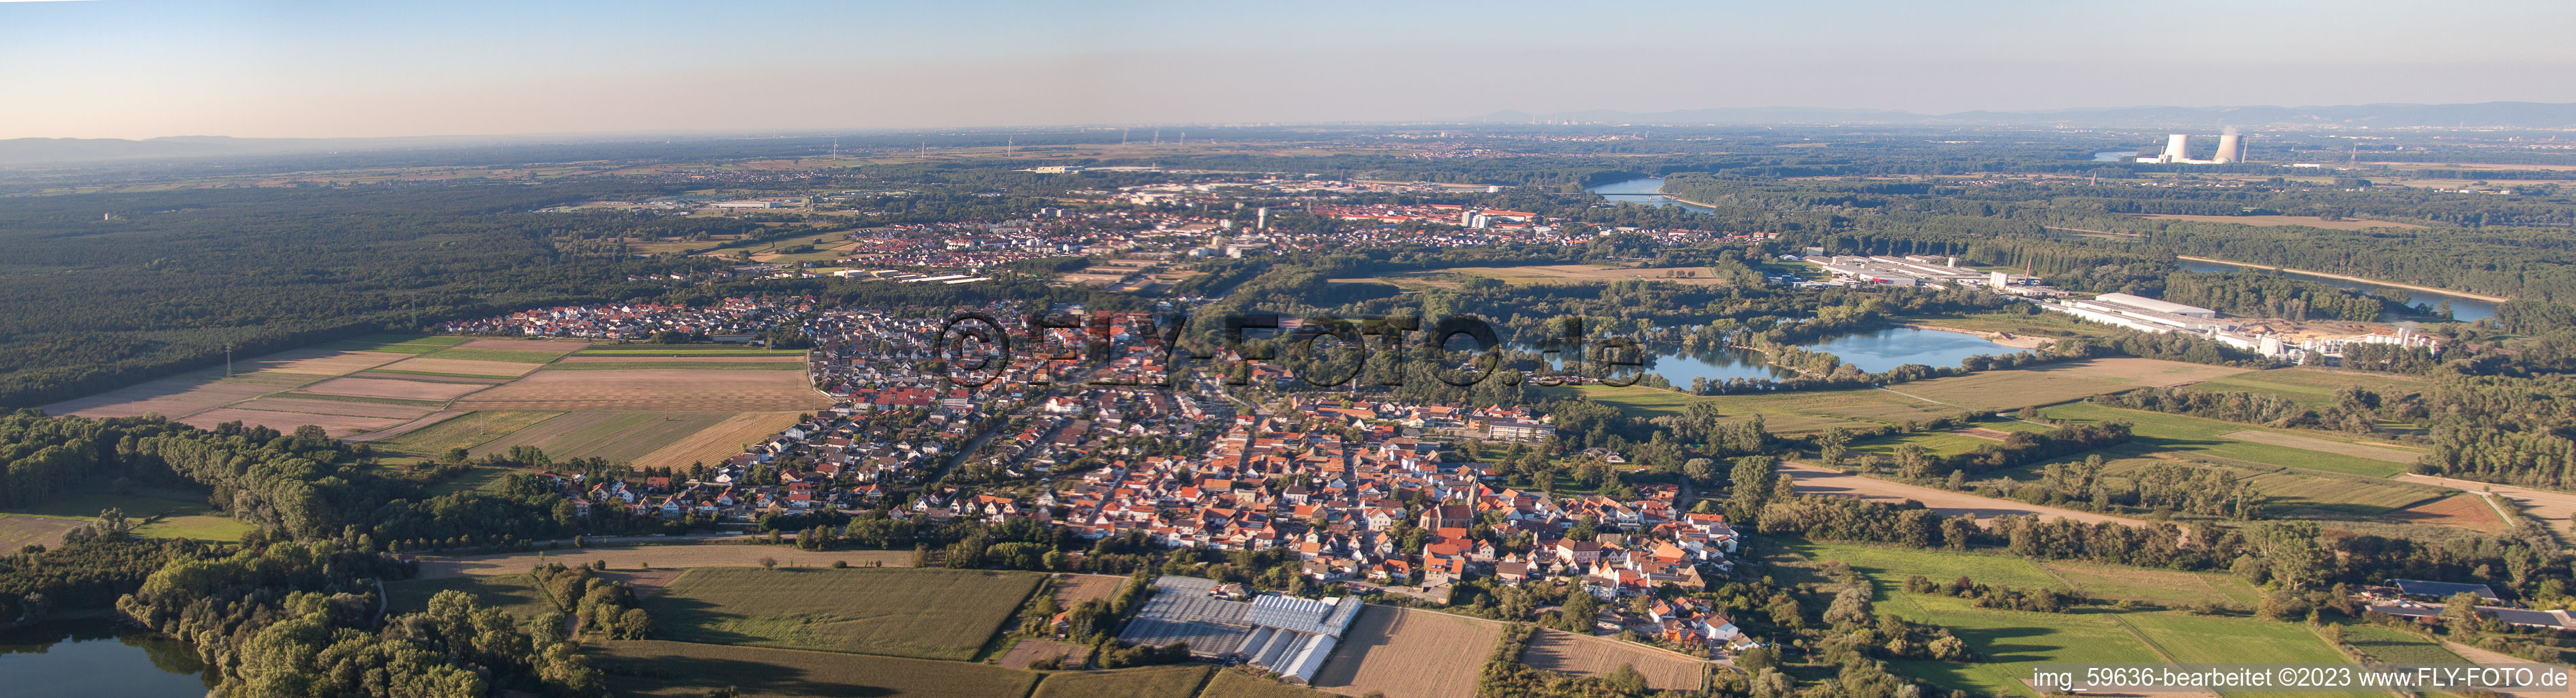 Luftbild von Panorama in Germersheim im Bundesland Rheinland-Pfalz, Deutschland